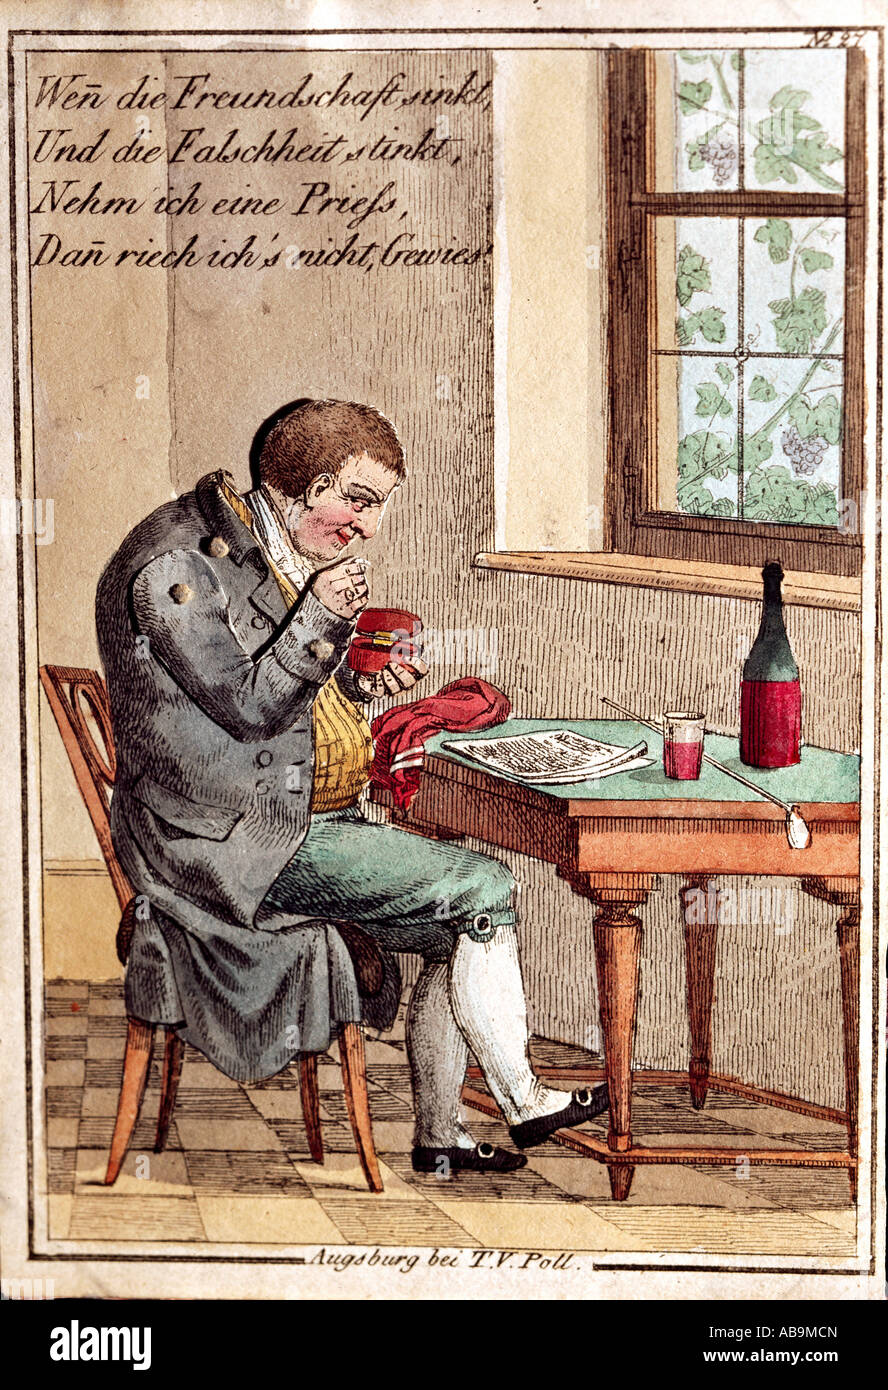 Kitsch, tarjetas de felicitación, tarjeta de frienship, tabaco de rape, grabado coloreado, publicado por T. V. Poll, Augsburg, circa 1800, Foto de stock